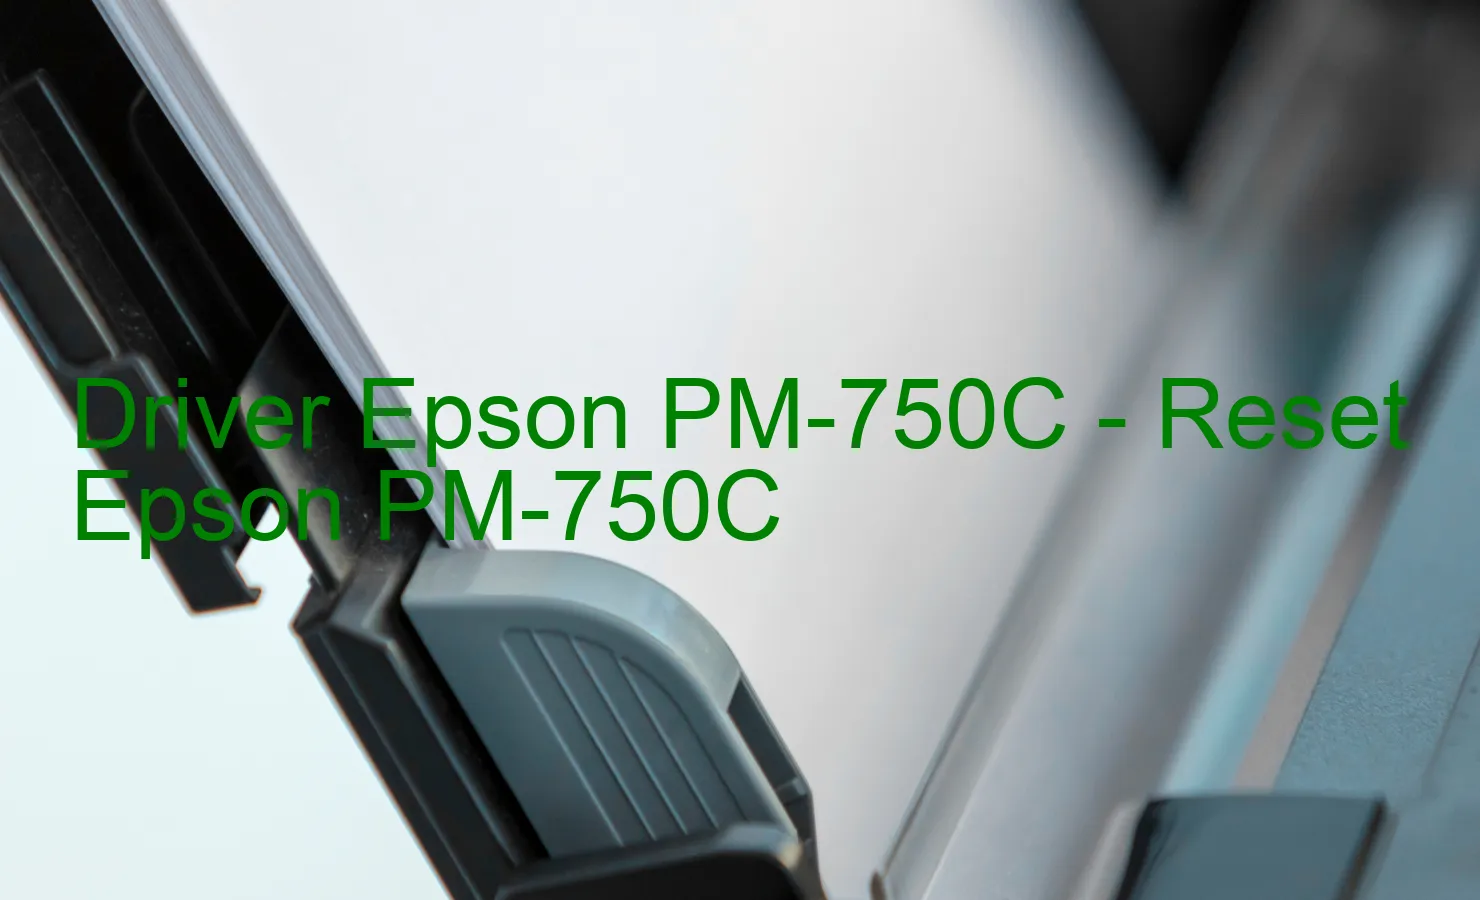 Epson PM-750Cのドライバー、Epson PM-750Cのリセットソフトウェア